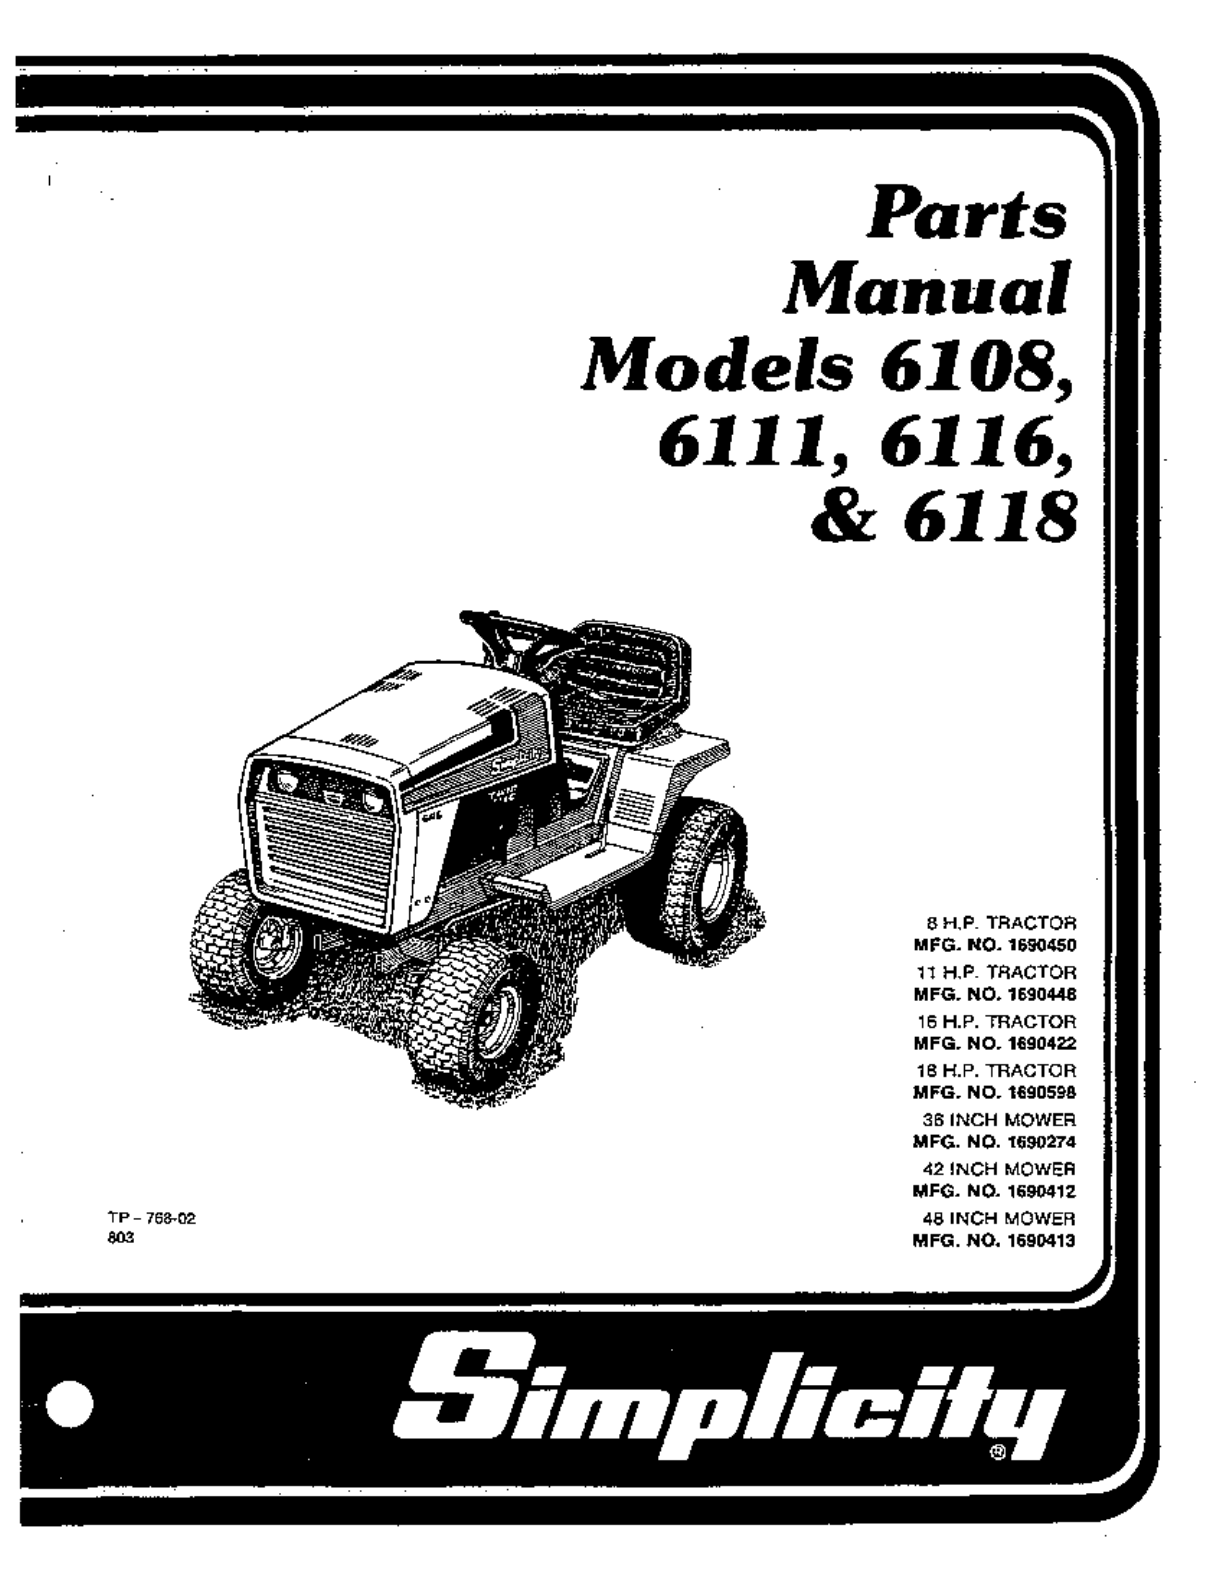 Simplicity 6111 Lawn Mower User Manual